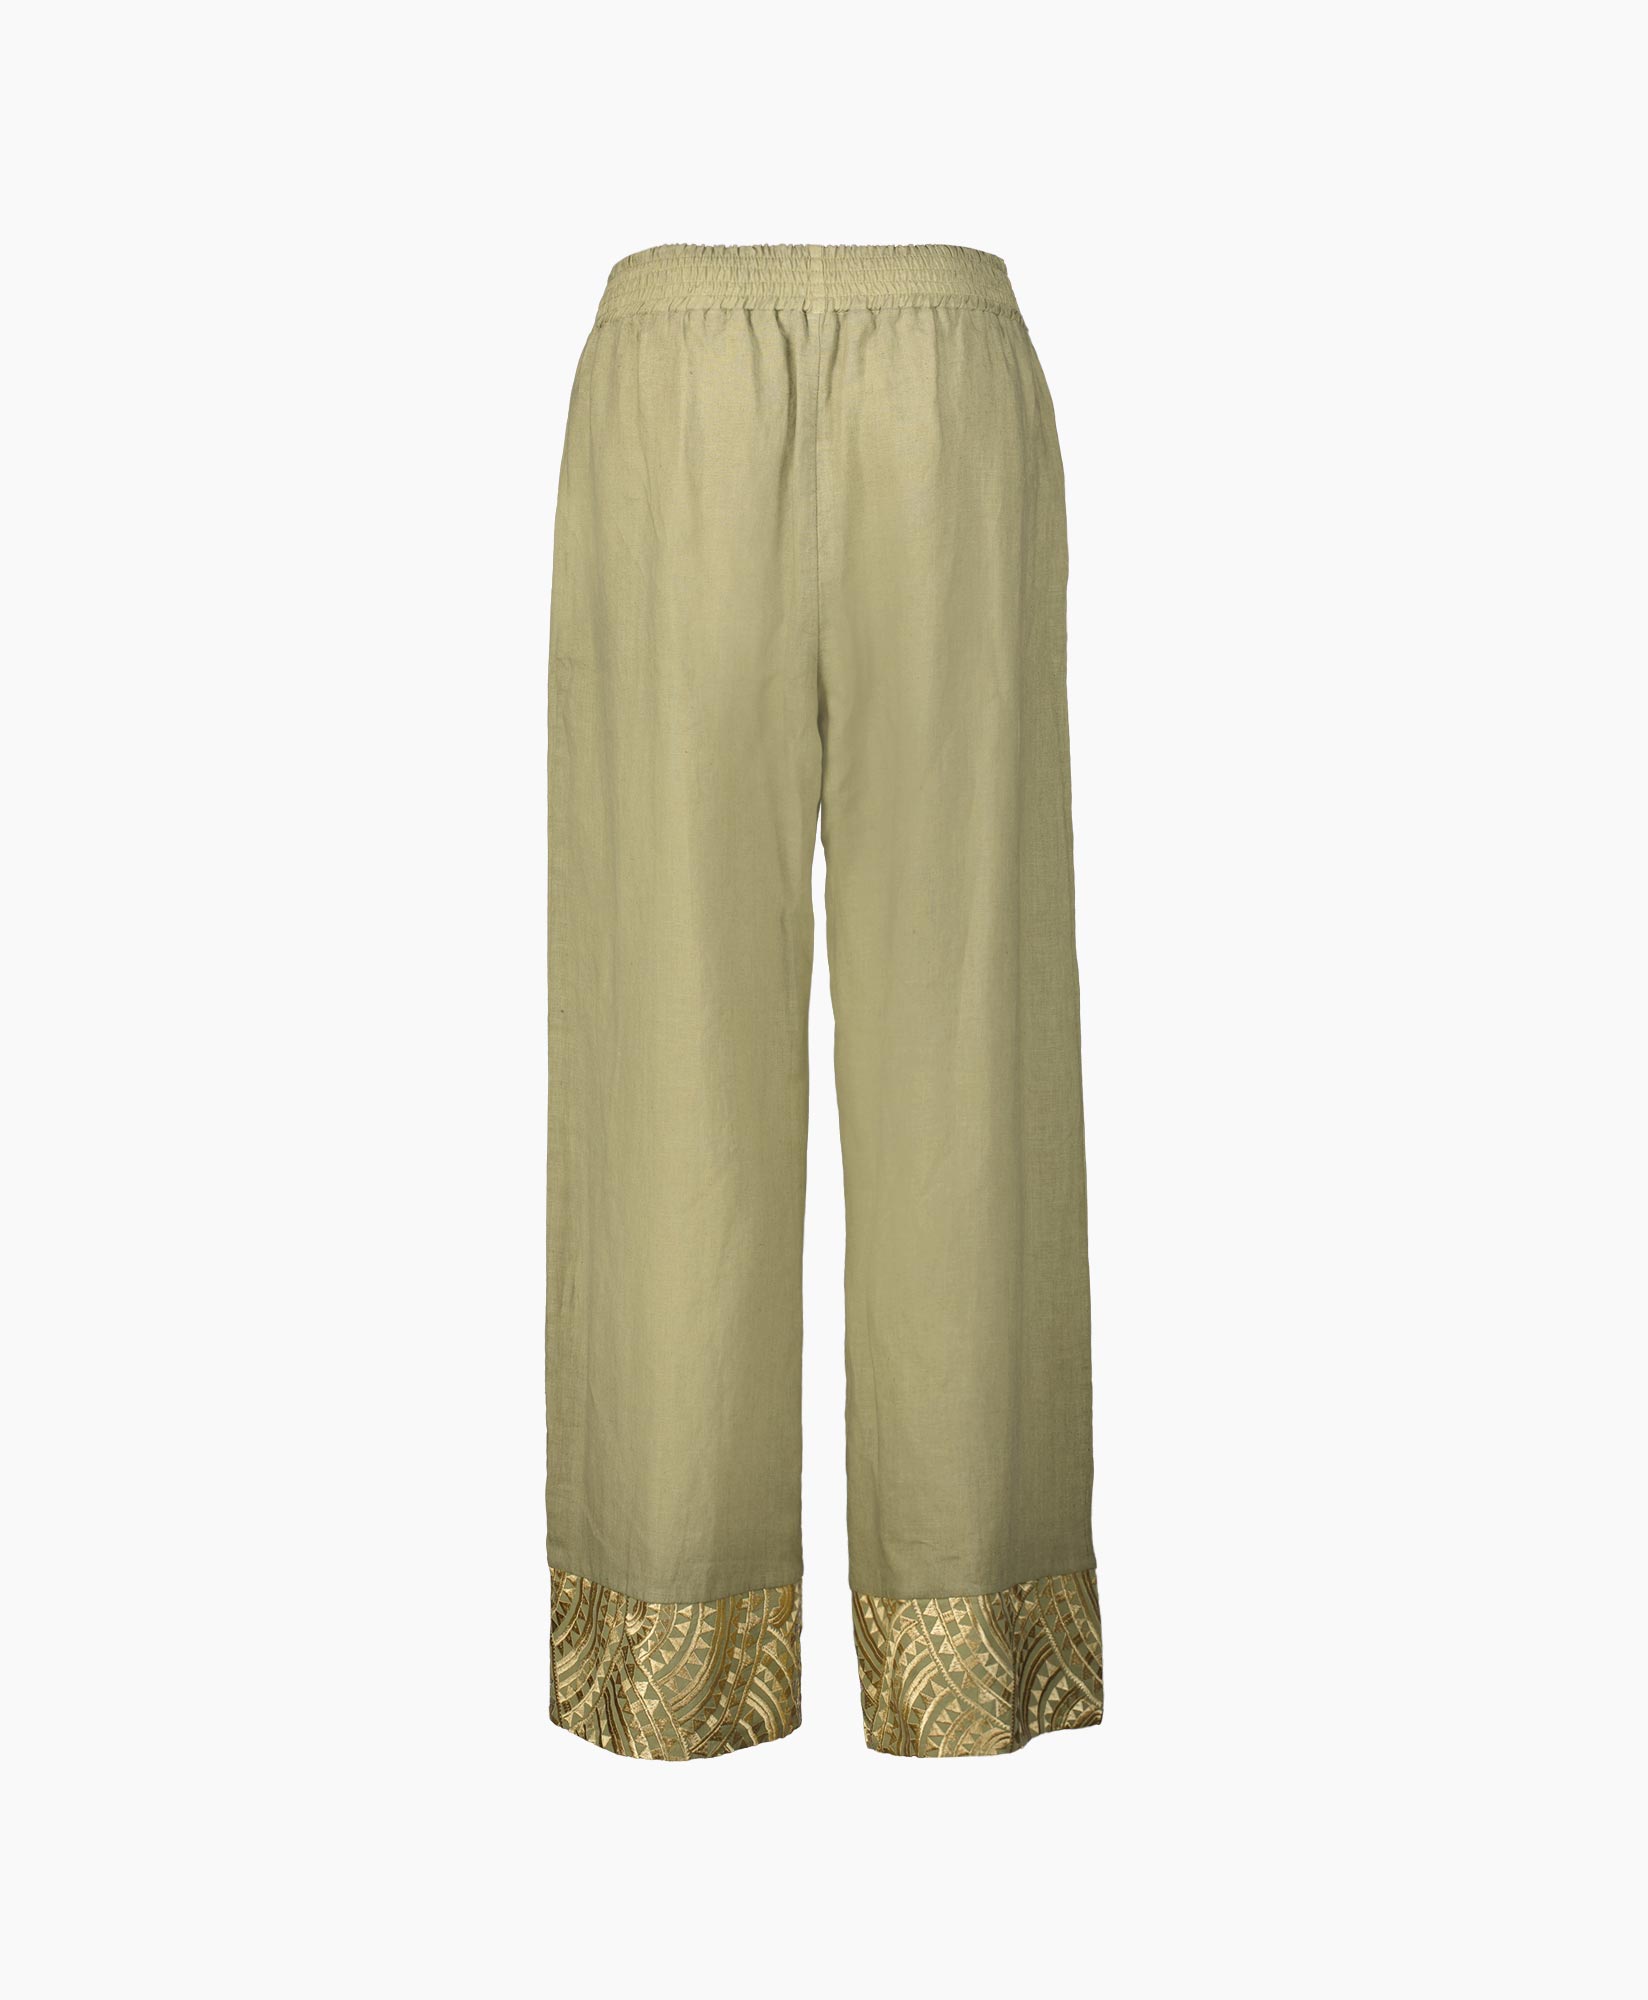 Pantalon New All Over Elastic Waistband Goud